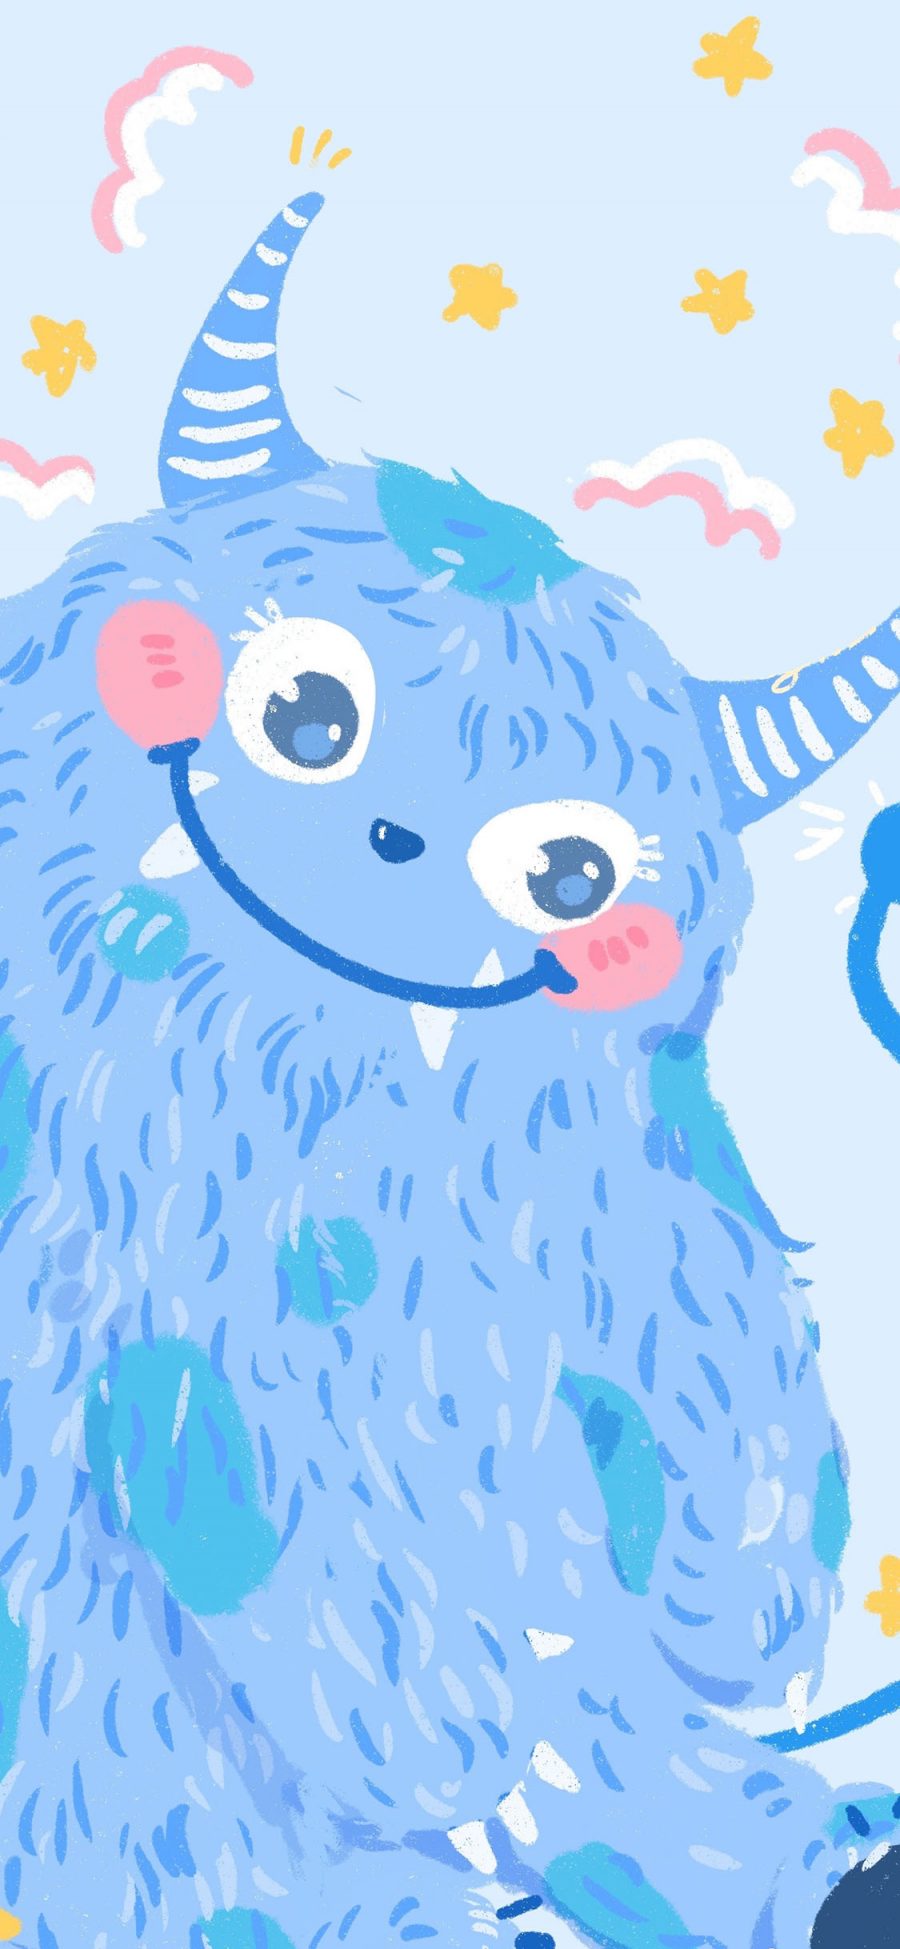 [2436×1125]小怪兽 蓝 可爱 卡通 苹果手机动漫壁纸图片